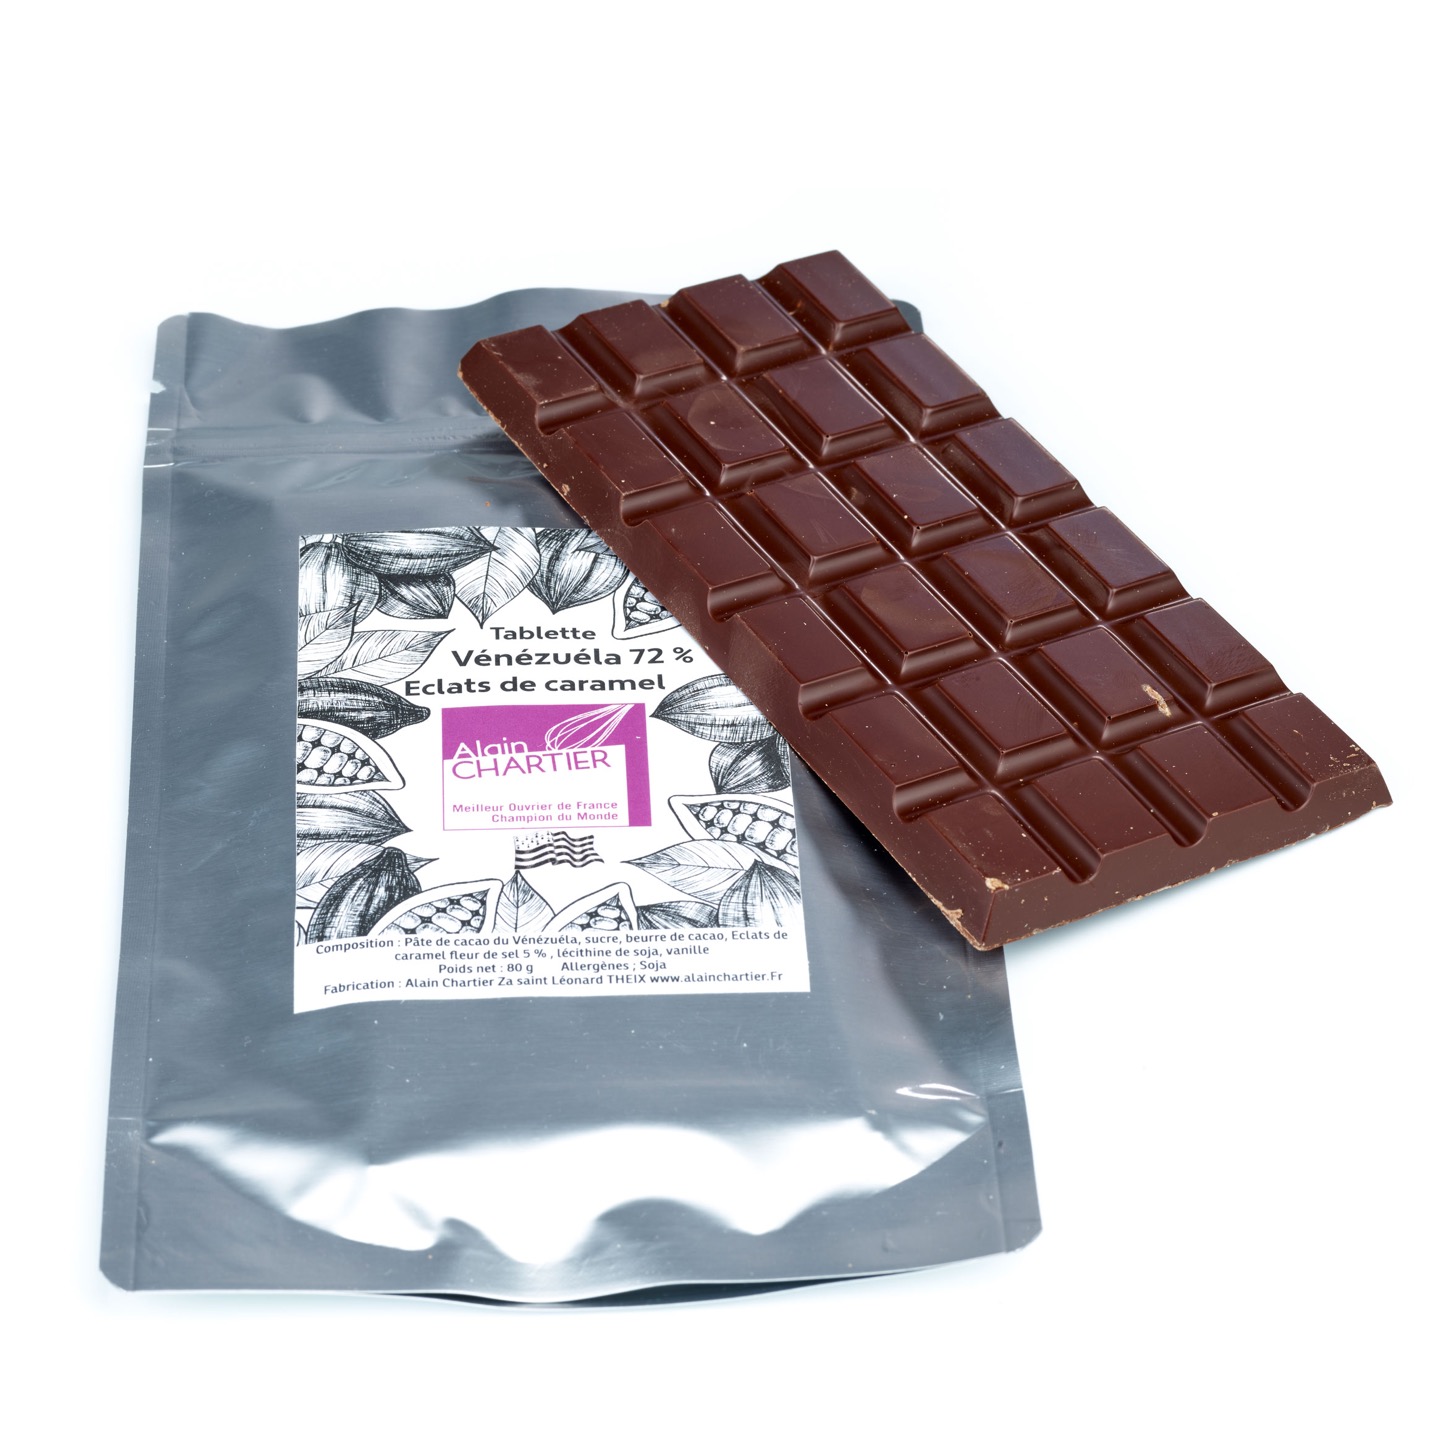 Tablette Chocolat Noir Caramel 72% Breizh 80g